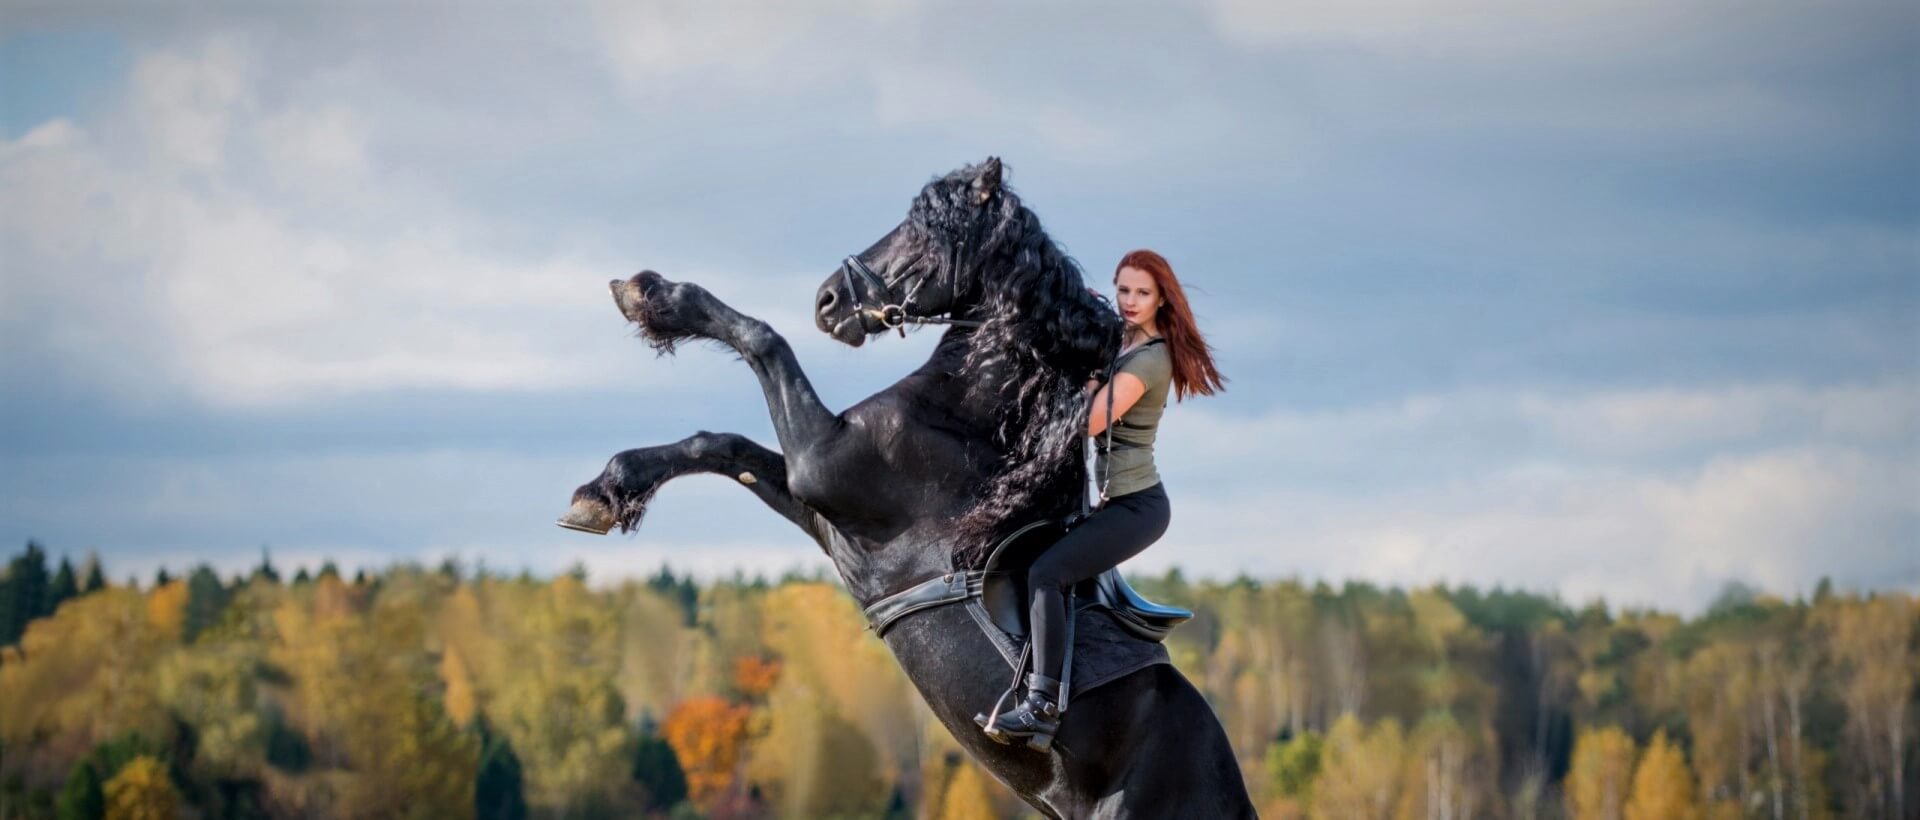 Фотосессия с трюковым конем, Львов - Фото